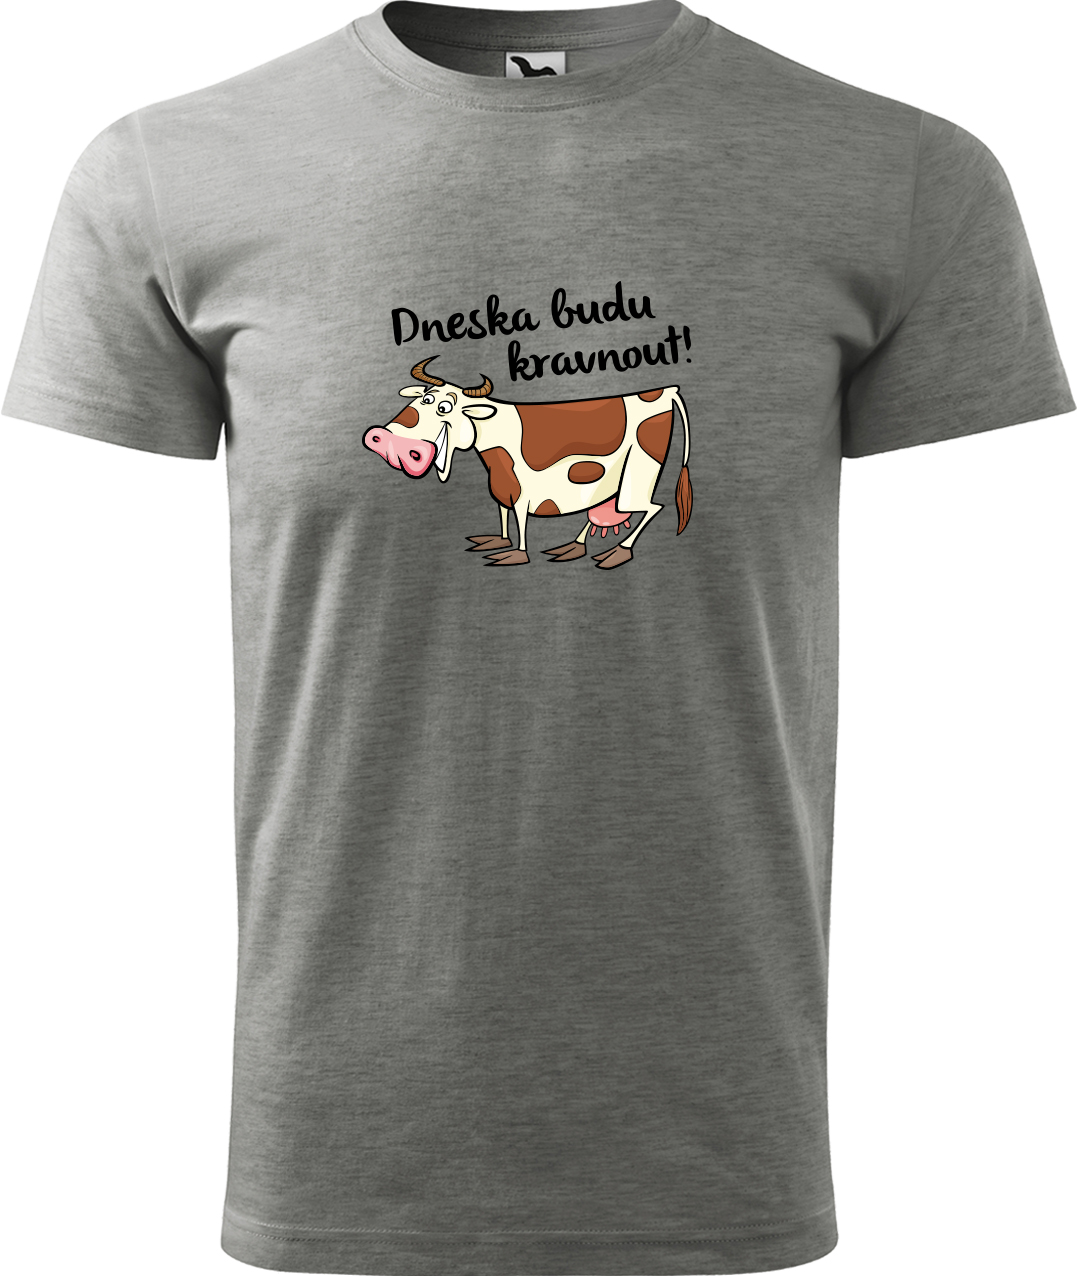 Pánské tričko s krávou - Dneska budu kravnout! Velikost: L, Barva: Tmavě šedý melír (12), Střih: pánský